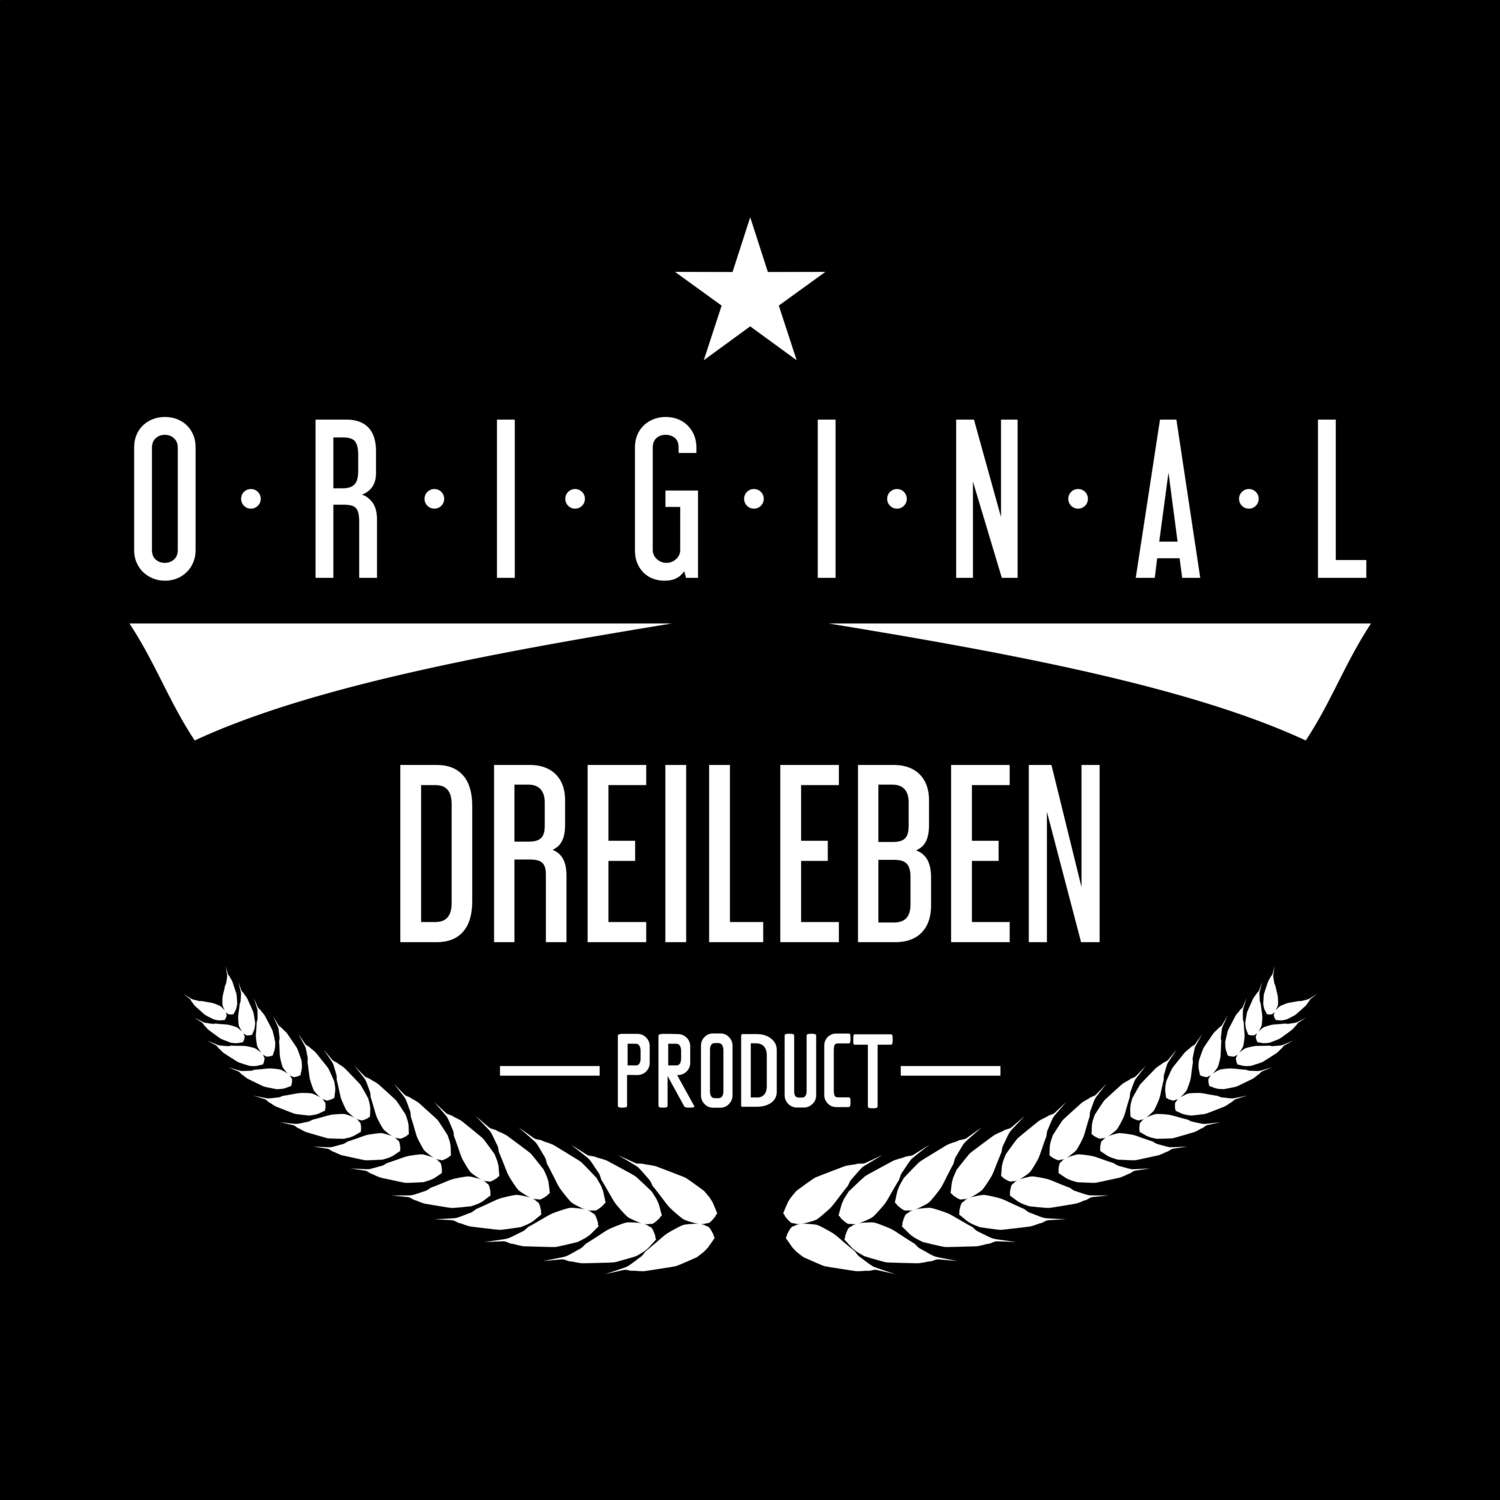 Dreileben T-Shirt »Original Product«